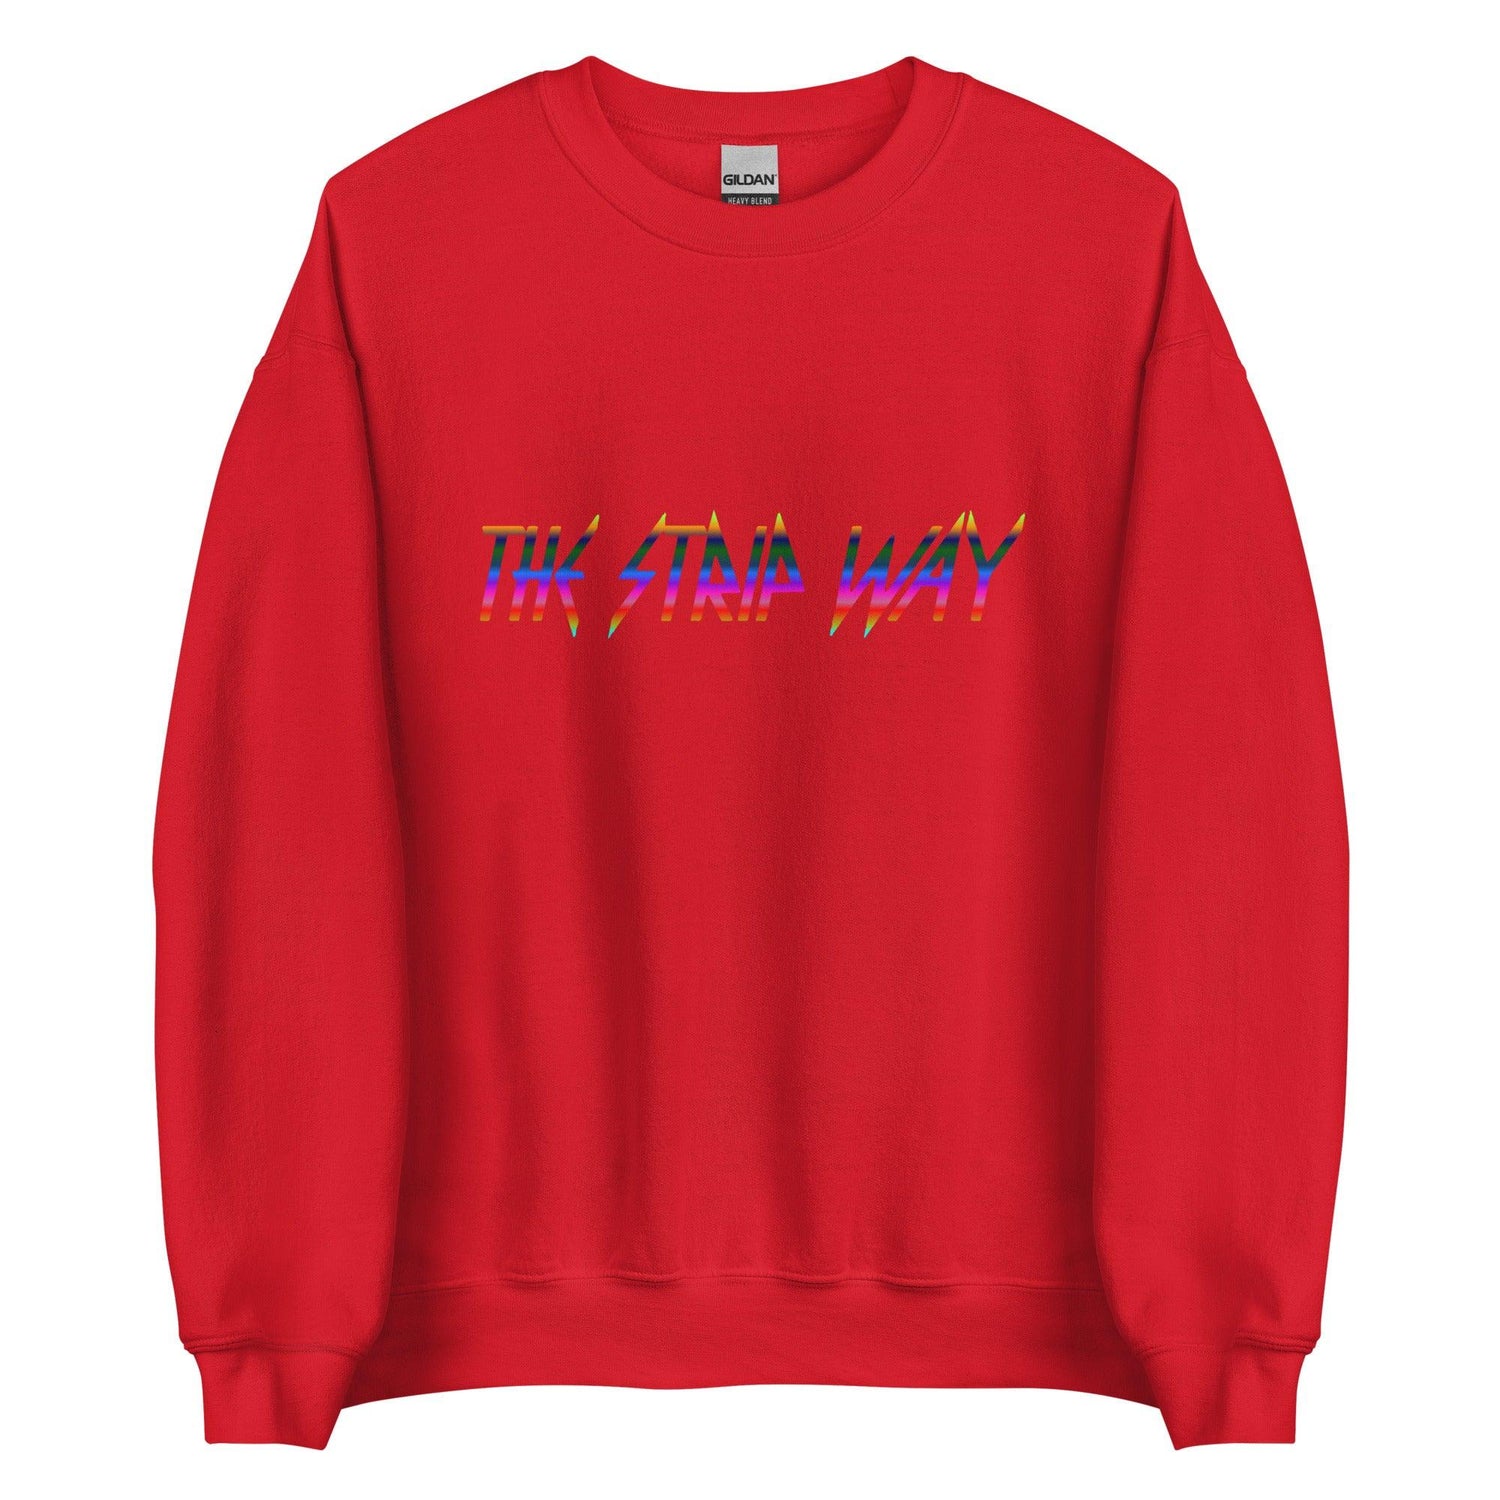 Marcus Stripling "The Strip Way" Sweatshirt - Fan Arch